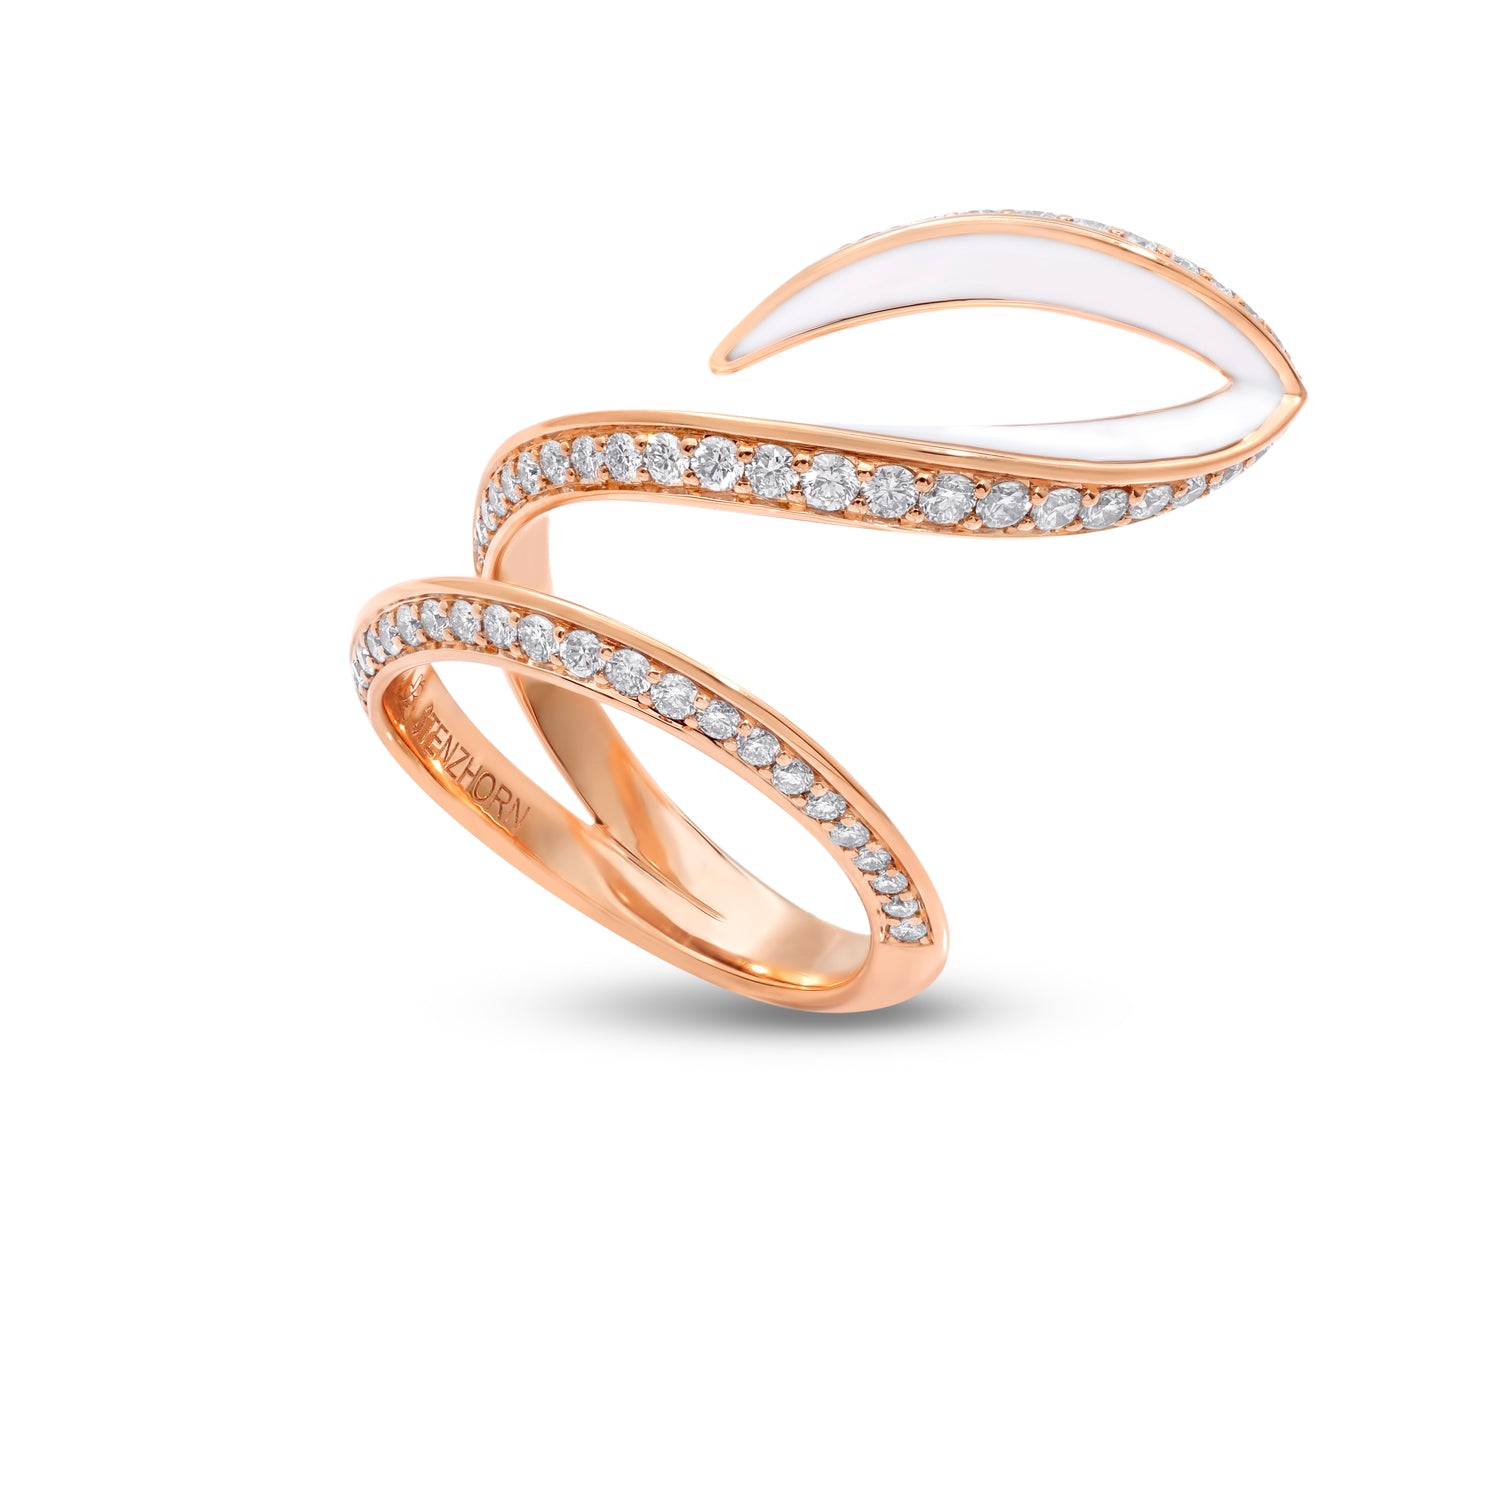 VIVA geschwungener Ring mit Diamanten und weißer Emaille